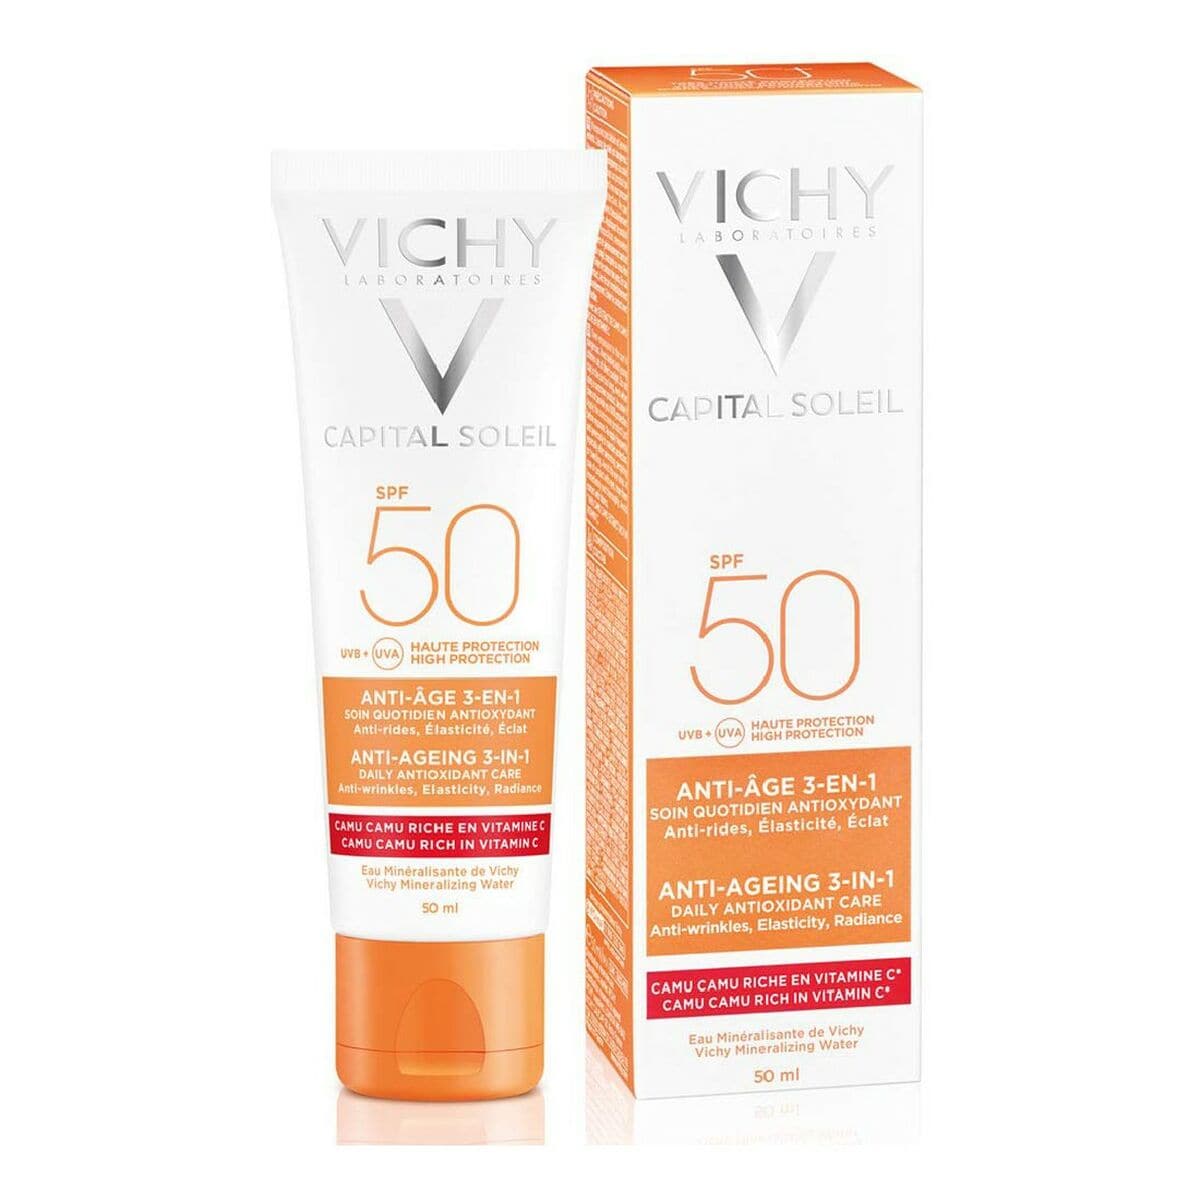 Anti-Ageing Cream Capital Soleil Vichy VCH00115 Antioxidant 3-in-1 50 ml-0